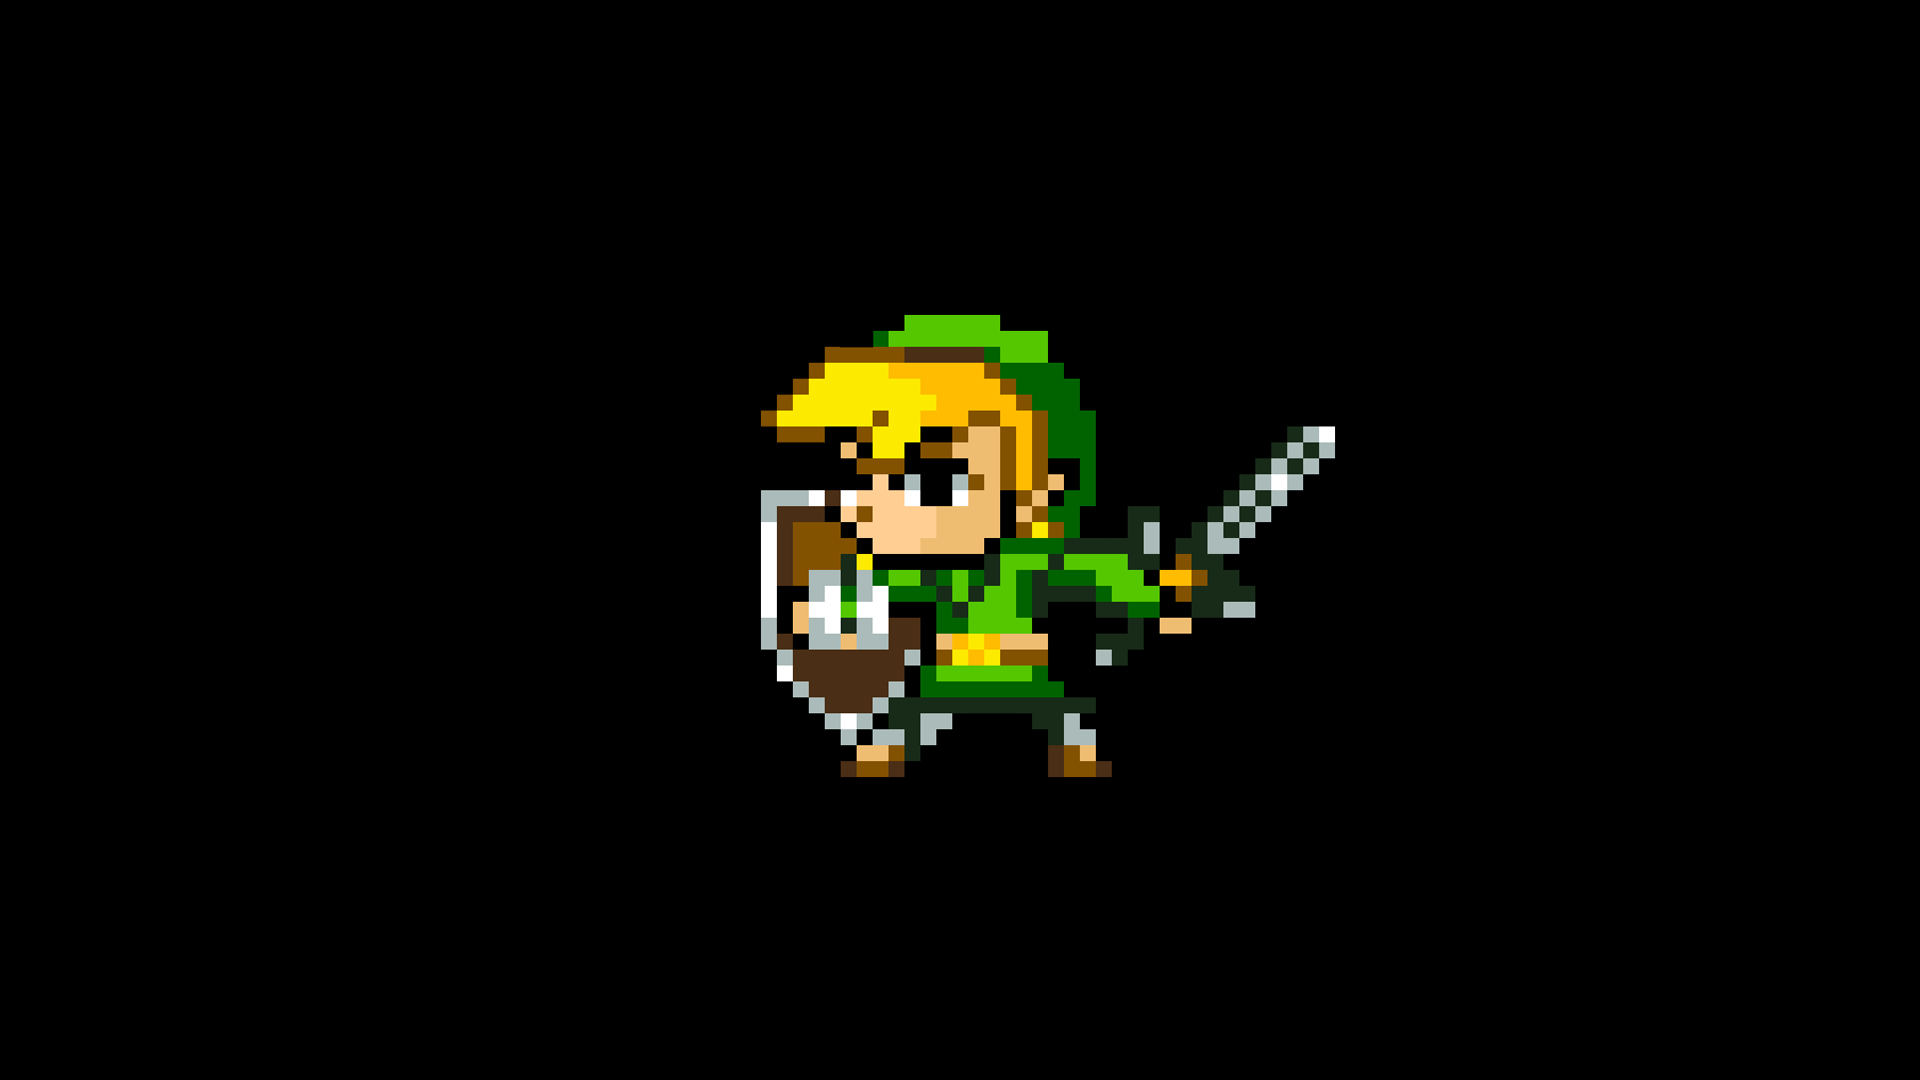 Legend Of Zelda Background 8 Bit - HD Wallpaper 